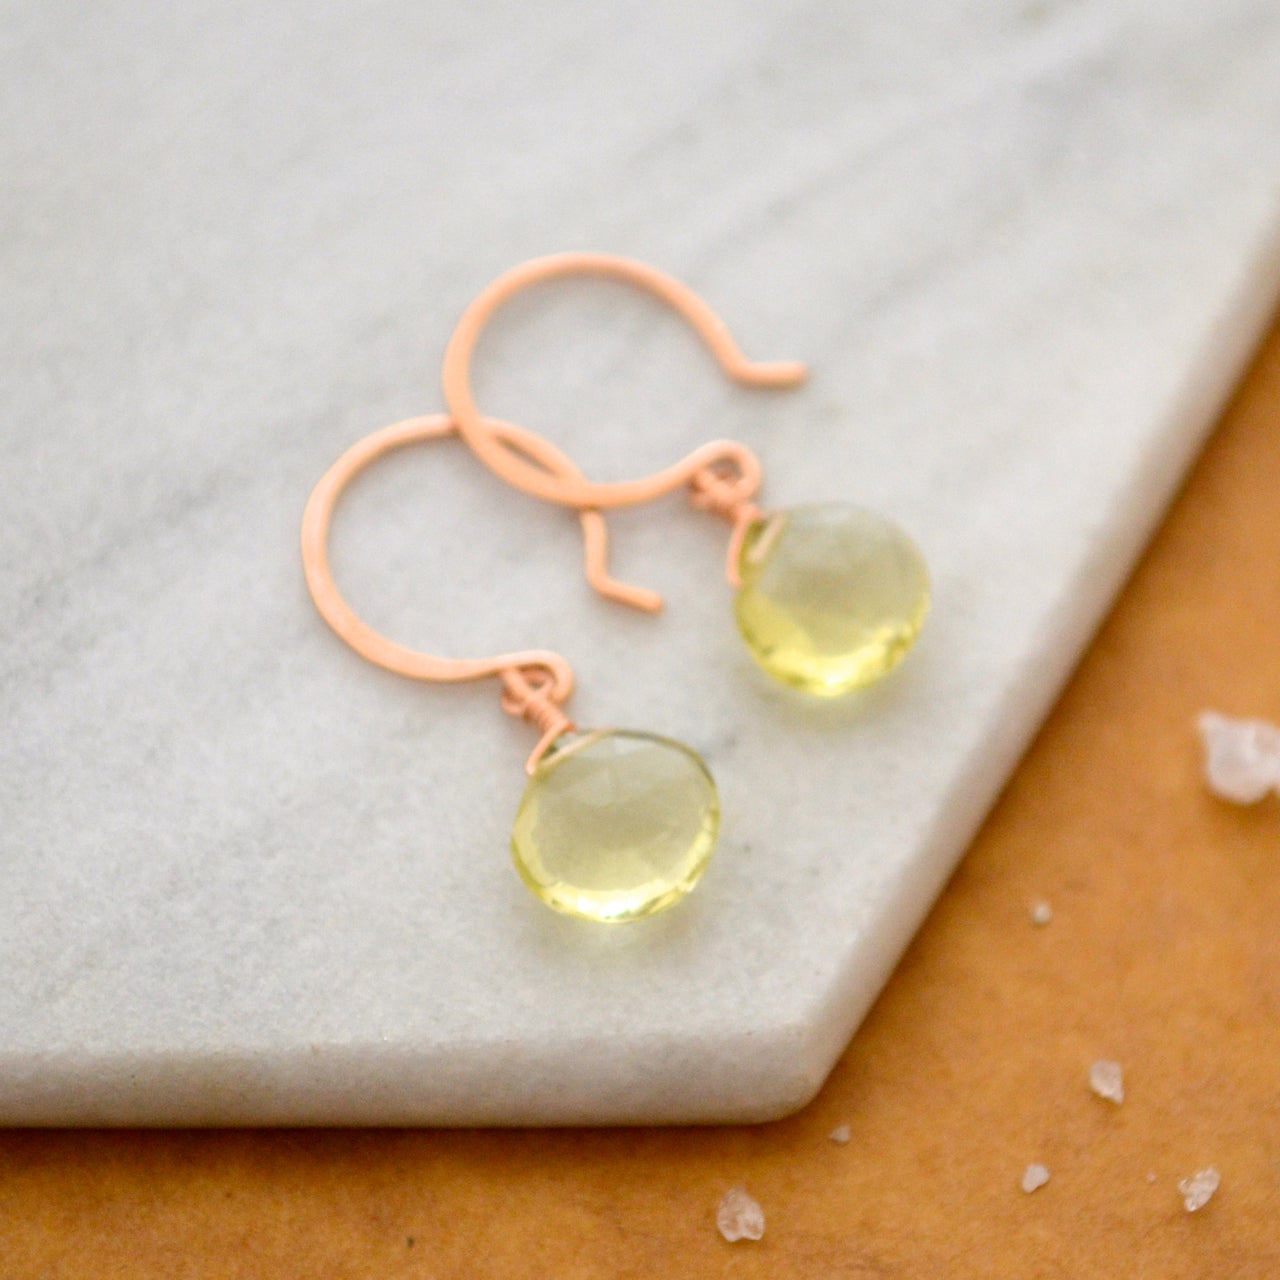 Limoncello Earrings - lemon quartz gemstone drop earrings 14K Gold - Foamy Wader